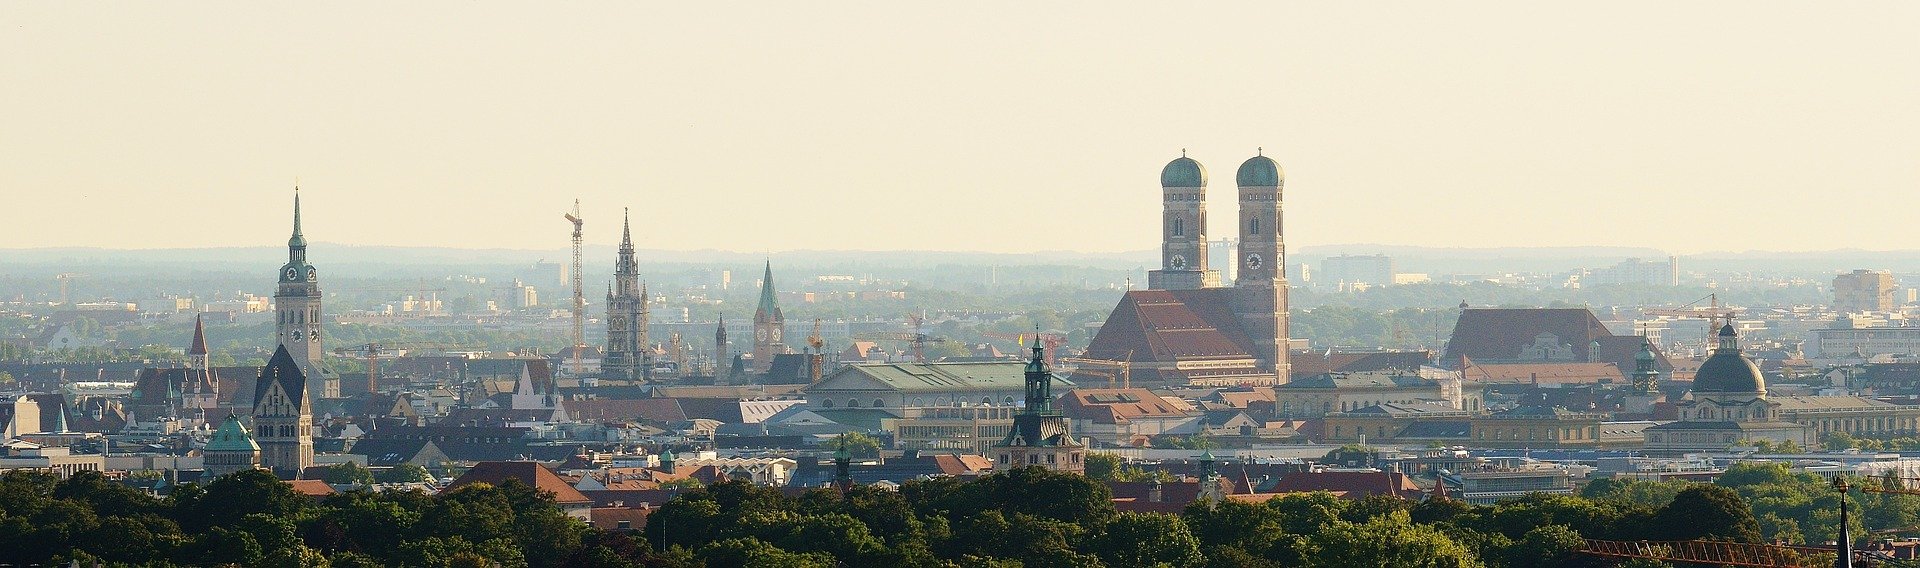 10 interessante Fakten über München, die Sie wahrscheinlich noch nicht wussten